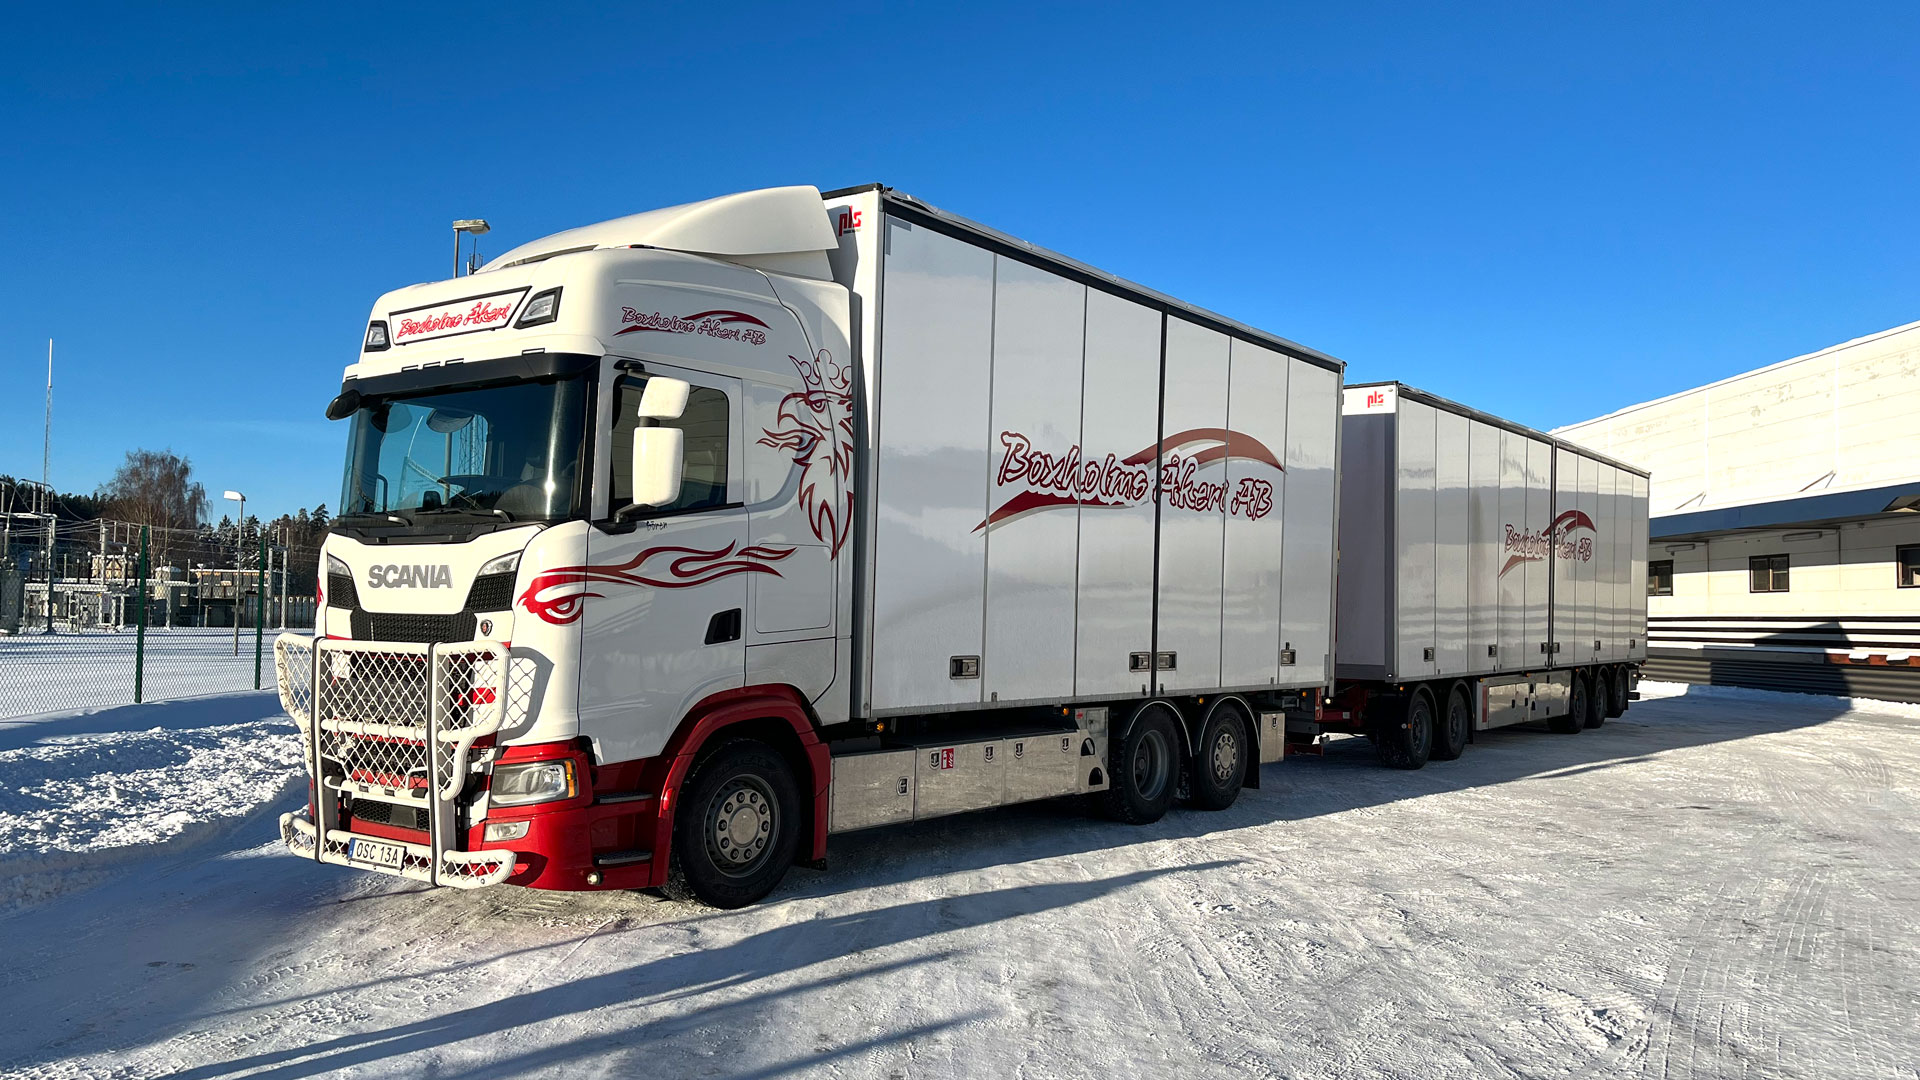 En ny Scanialastbil (R560) är levererad av Atteviks Lastbilar i Tranås till Boxholms Åkeri AB.